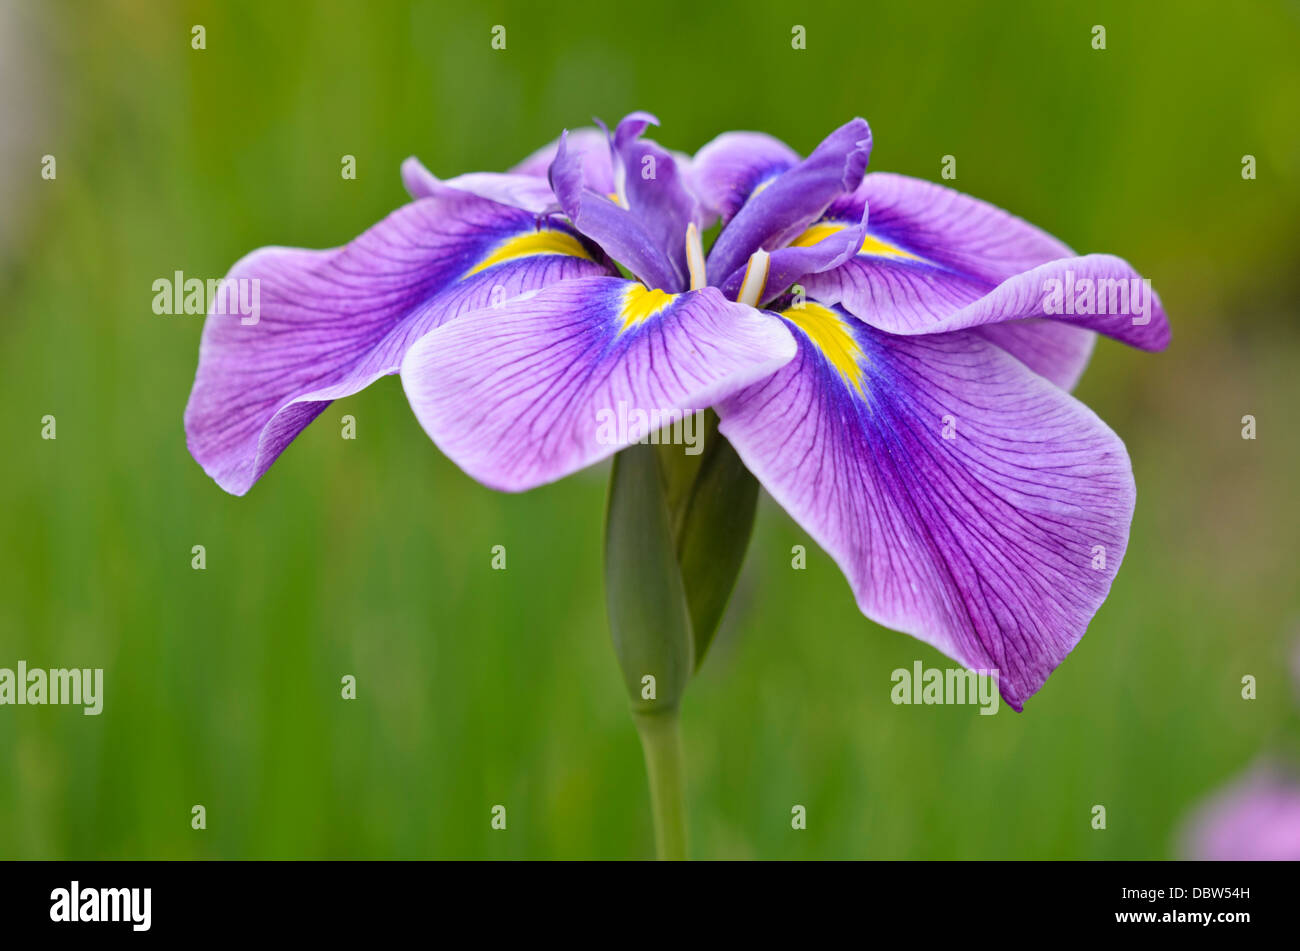 Japanese iris (Iris ensata) Stock Photo